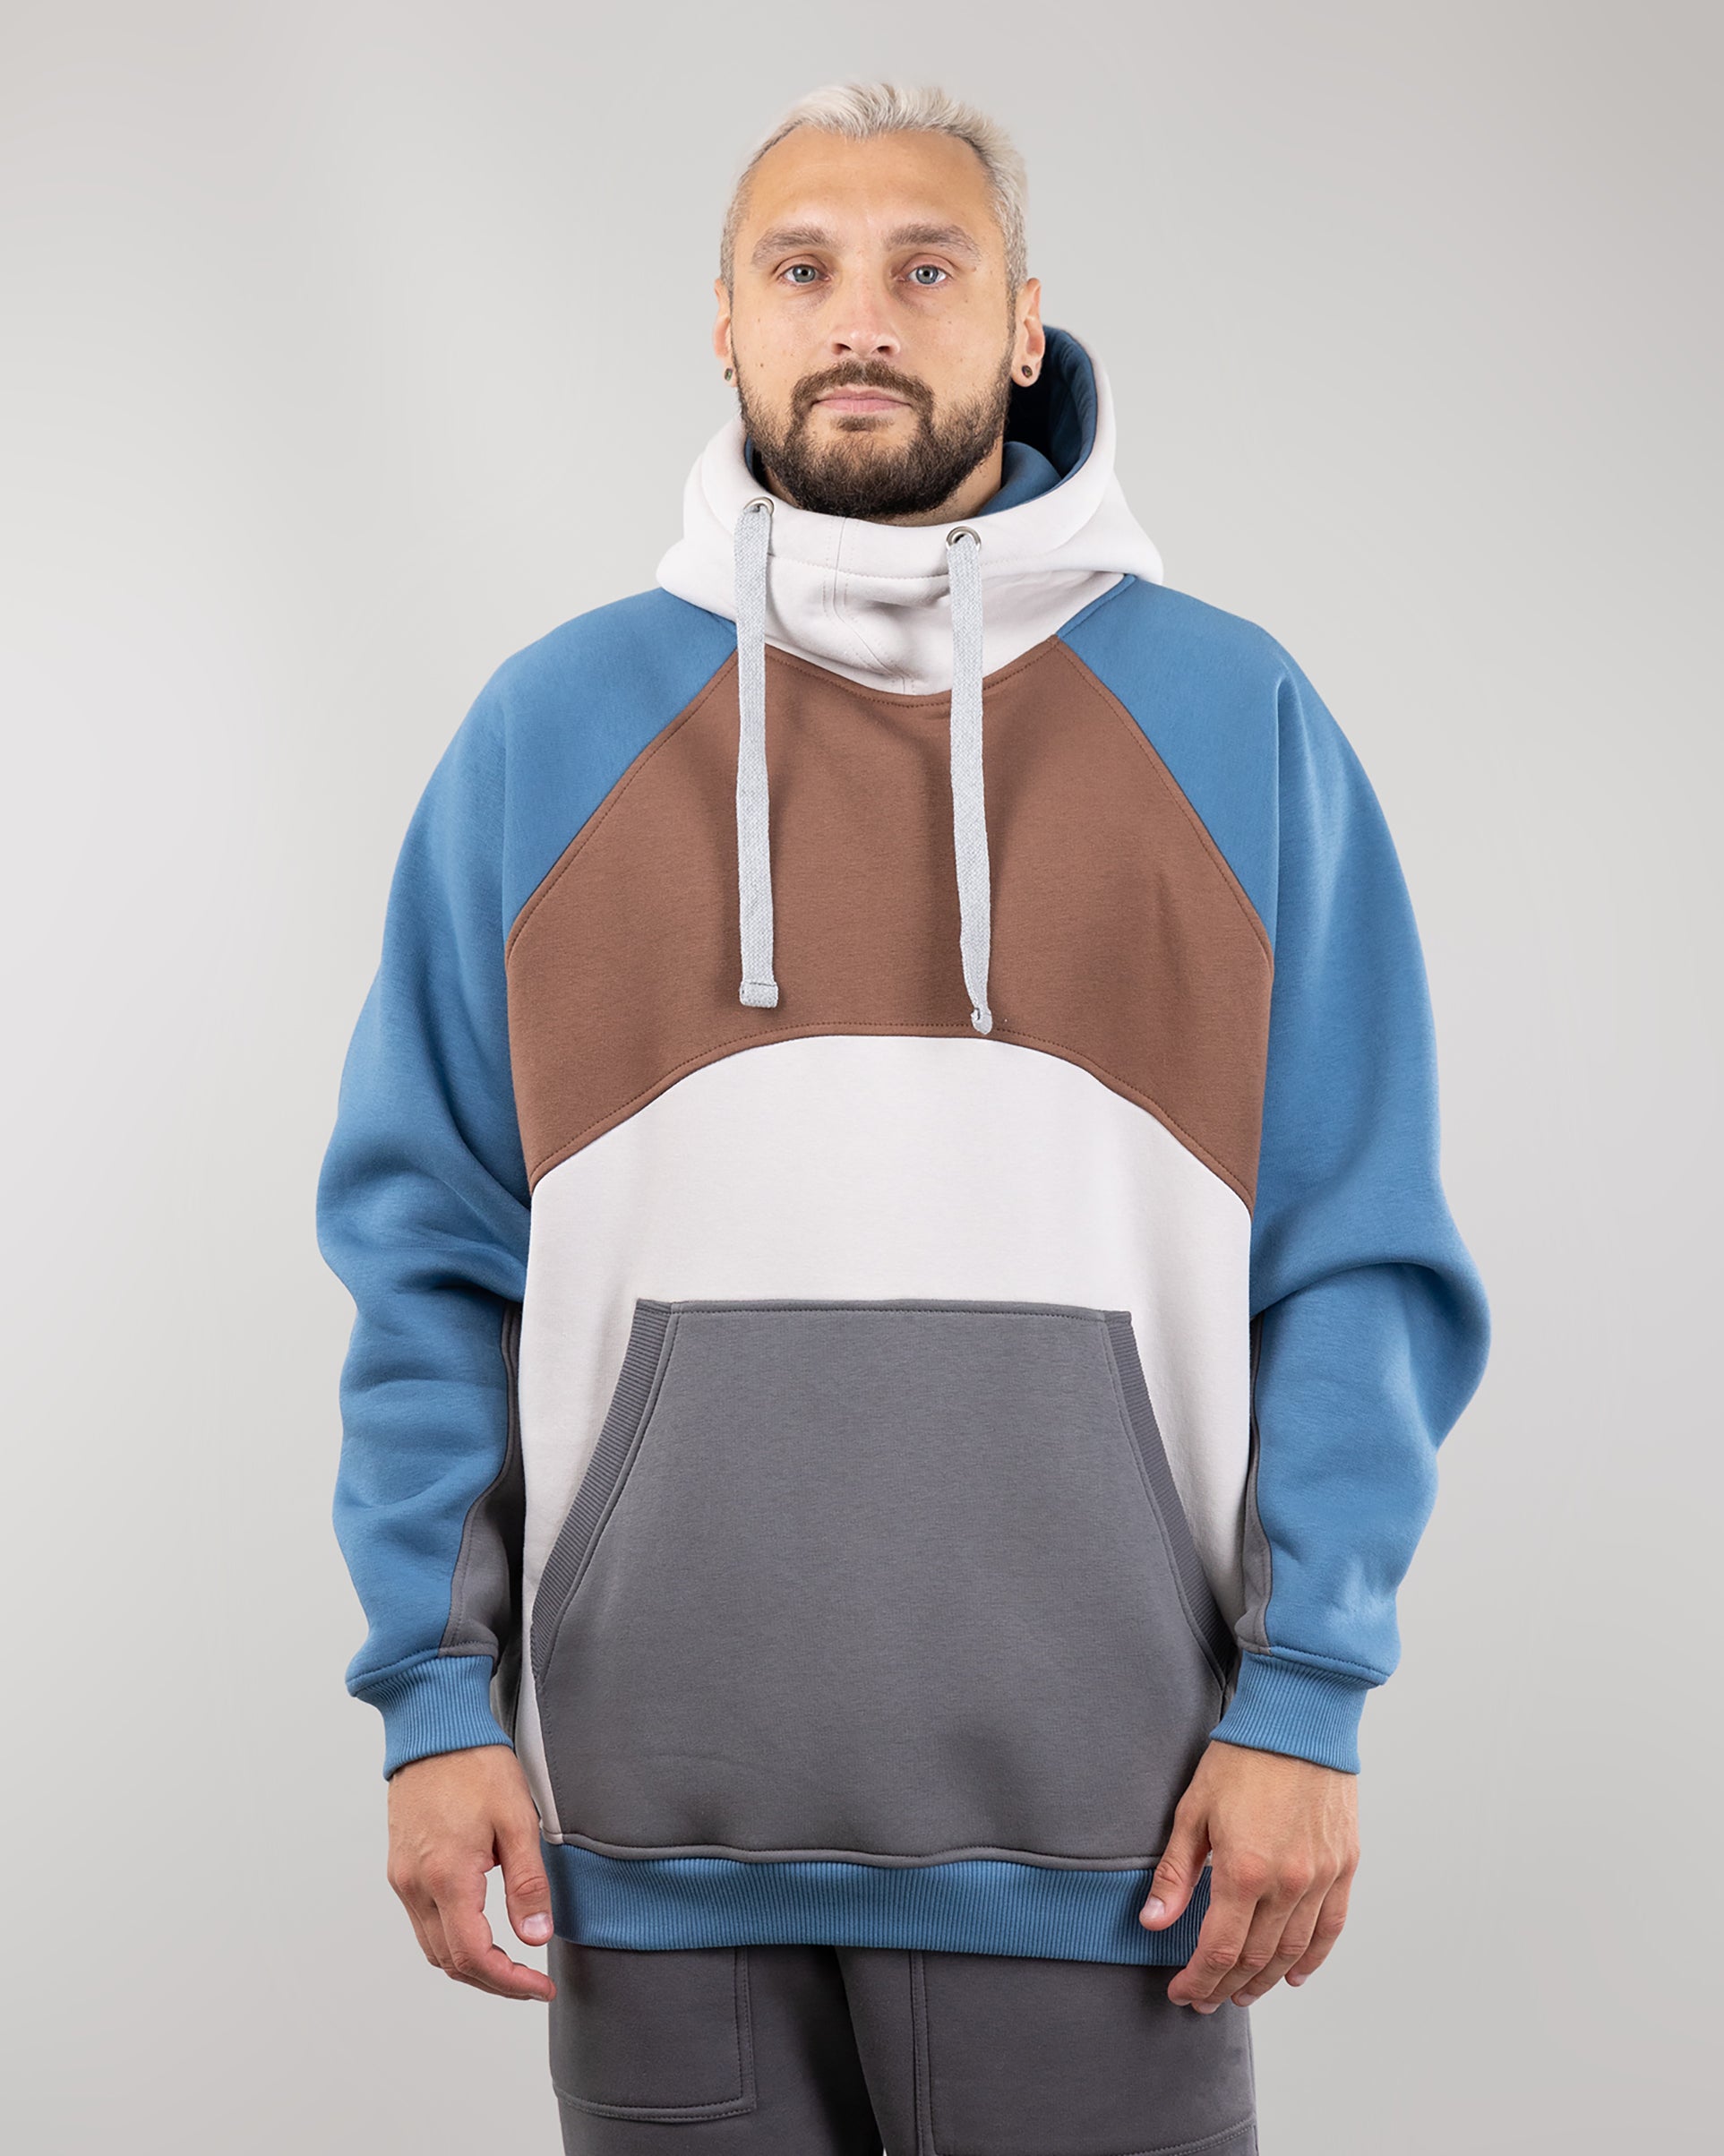 Hoodie "Umka", warm oversize hoodie.  Brown/Cream/Blue. Man in Front